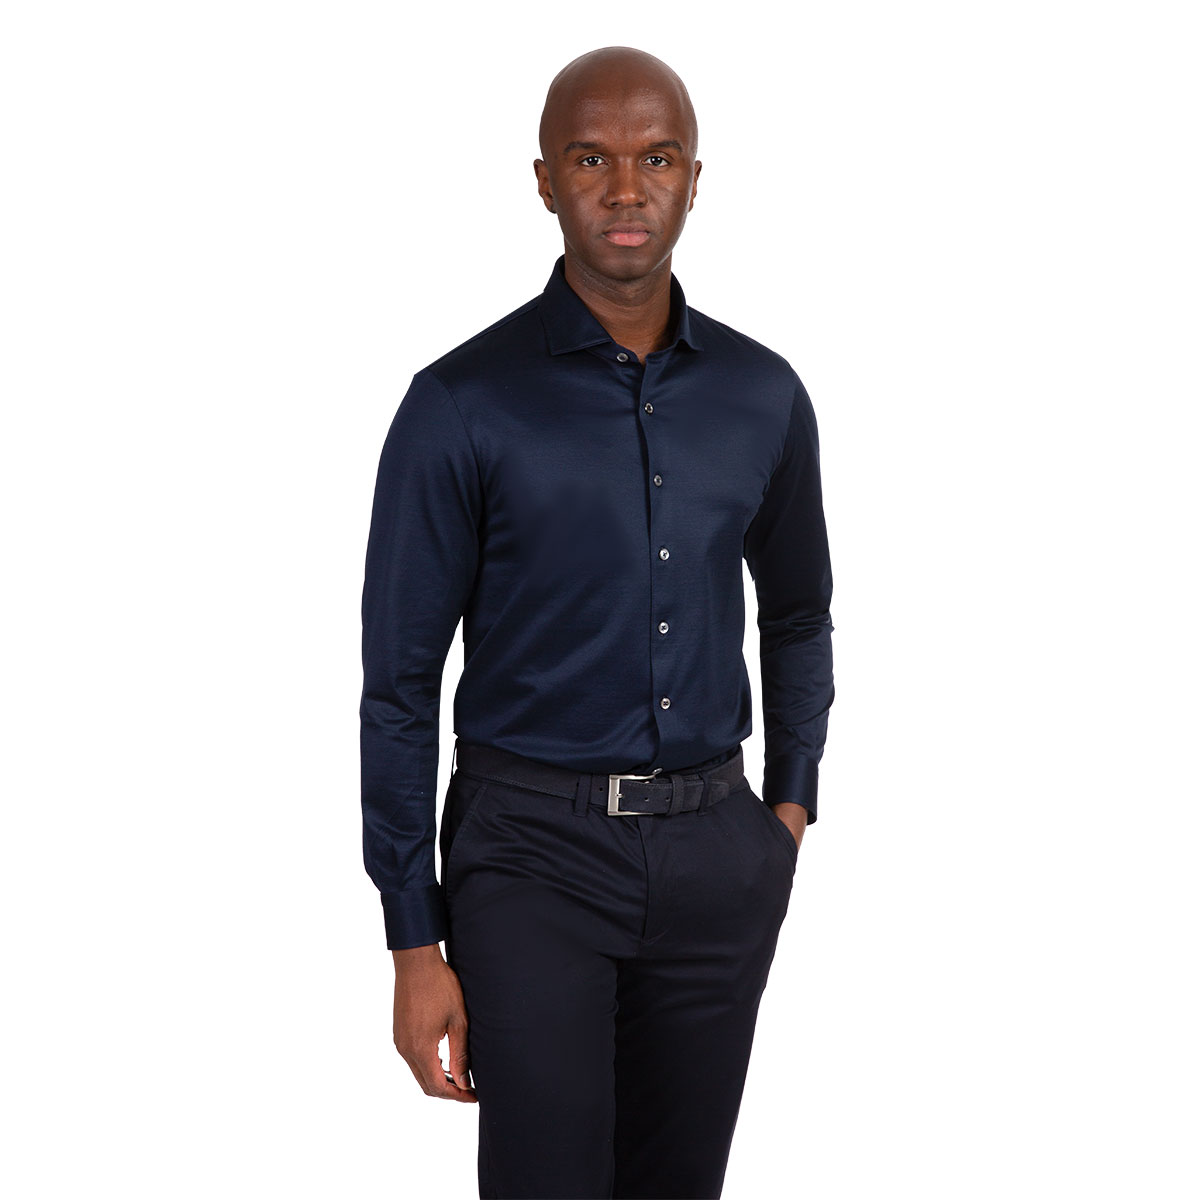 Premium Jersey Hemd in dunkelblau mit aufwendiger Veredelung